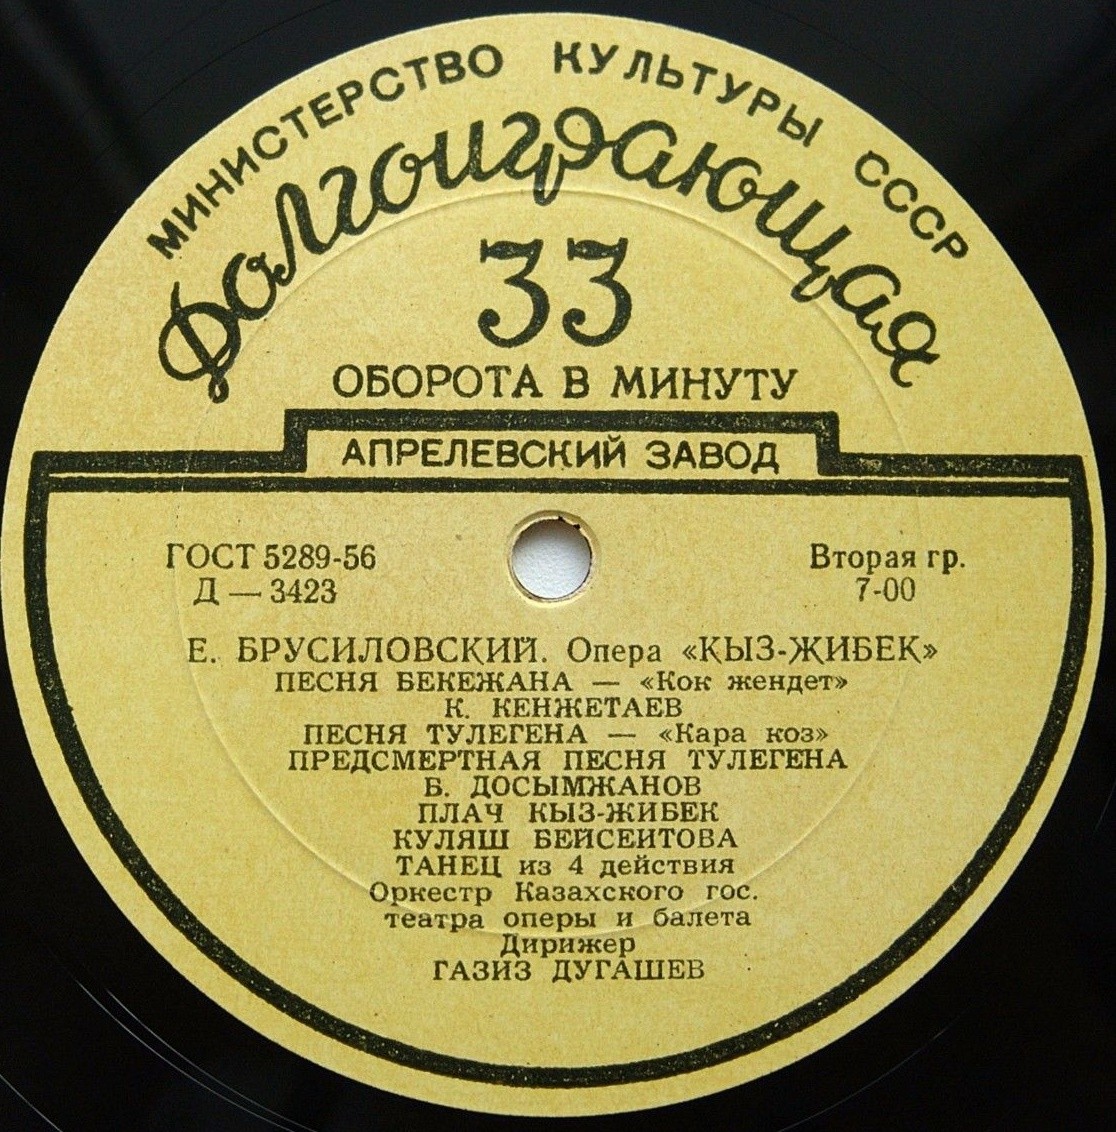 Е. БРУСИЛОВСКИЙ (1905). "Кыз-Жибек", сцены и арии (на казахском языке)